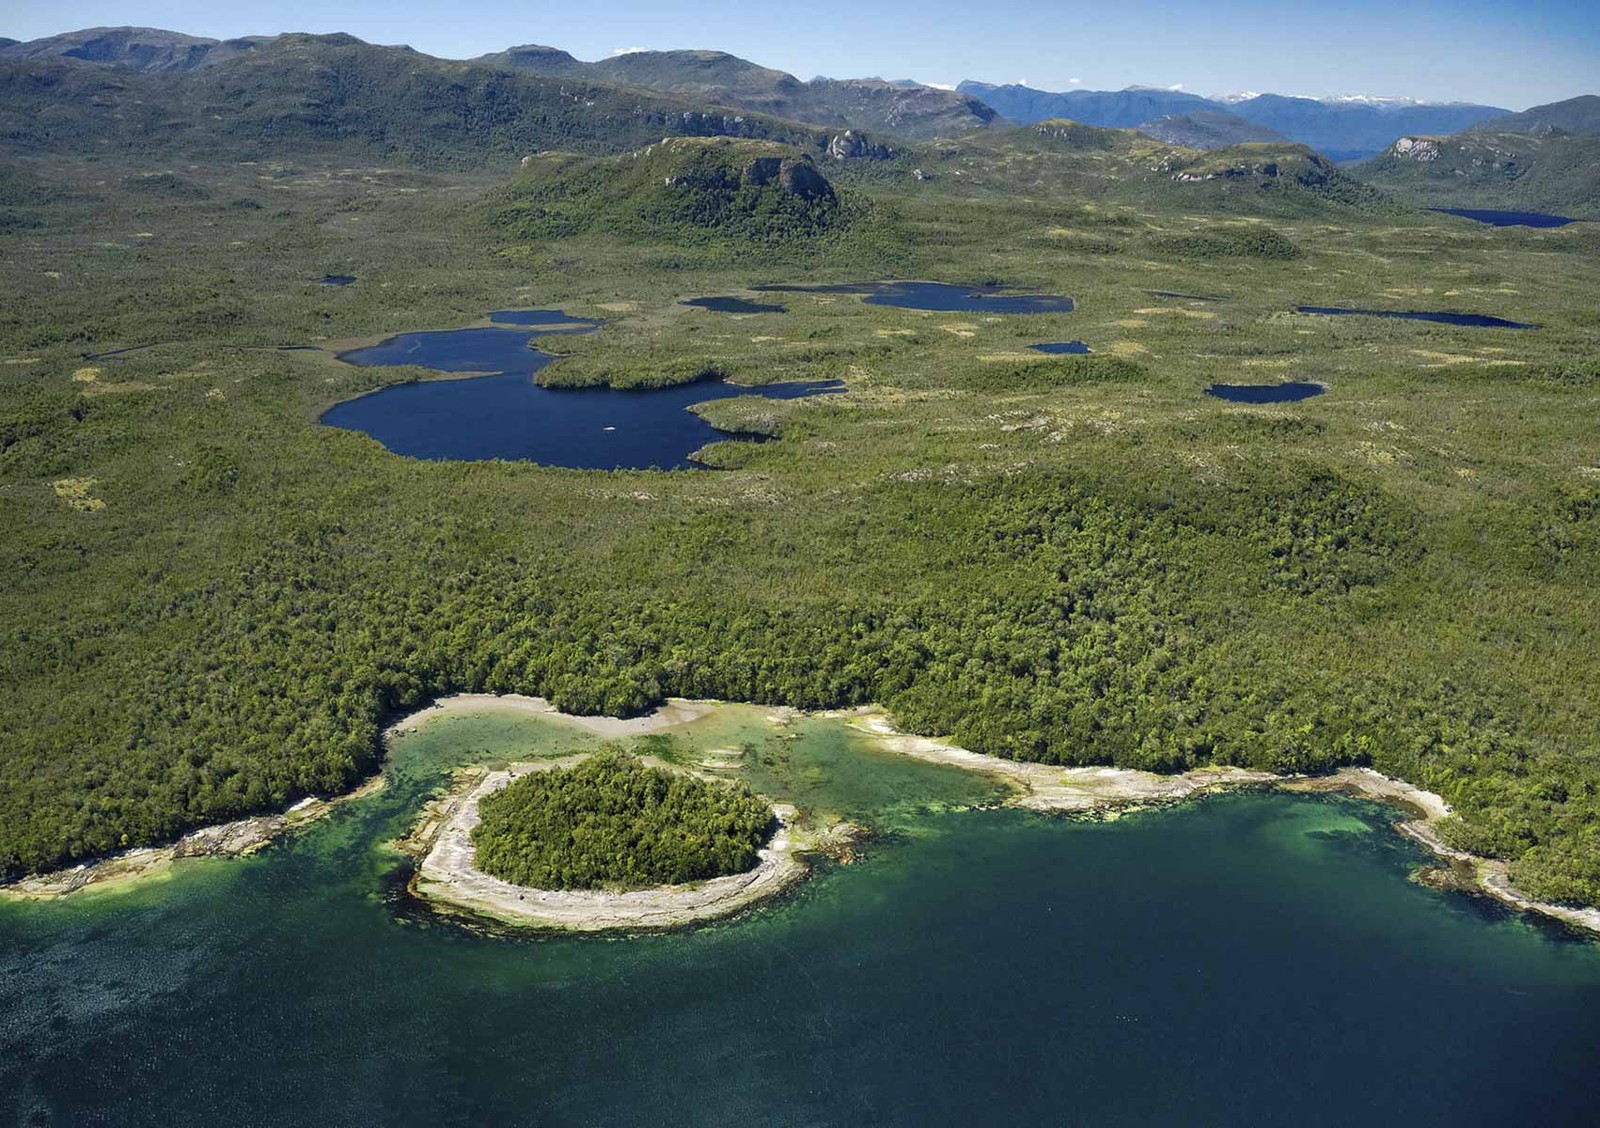 Ilha está coberta de turfa, um material de origem vegetal, parcialmente decomposto, encontrado em camadas em zonas úmidas — Foto: Hall and Hall